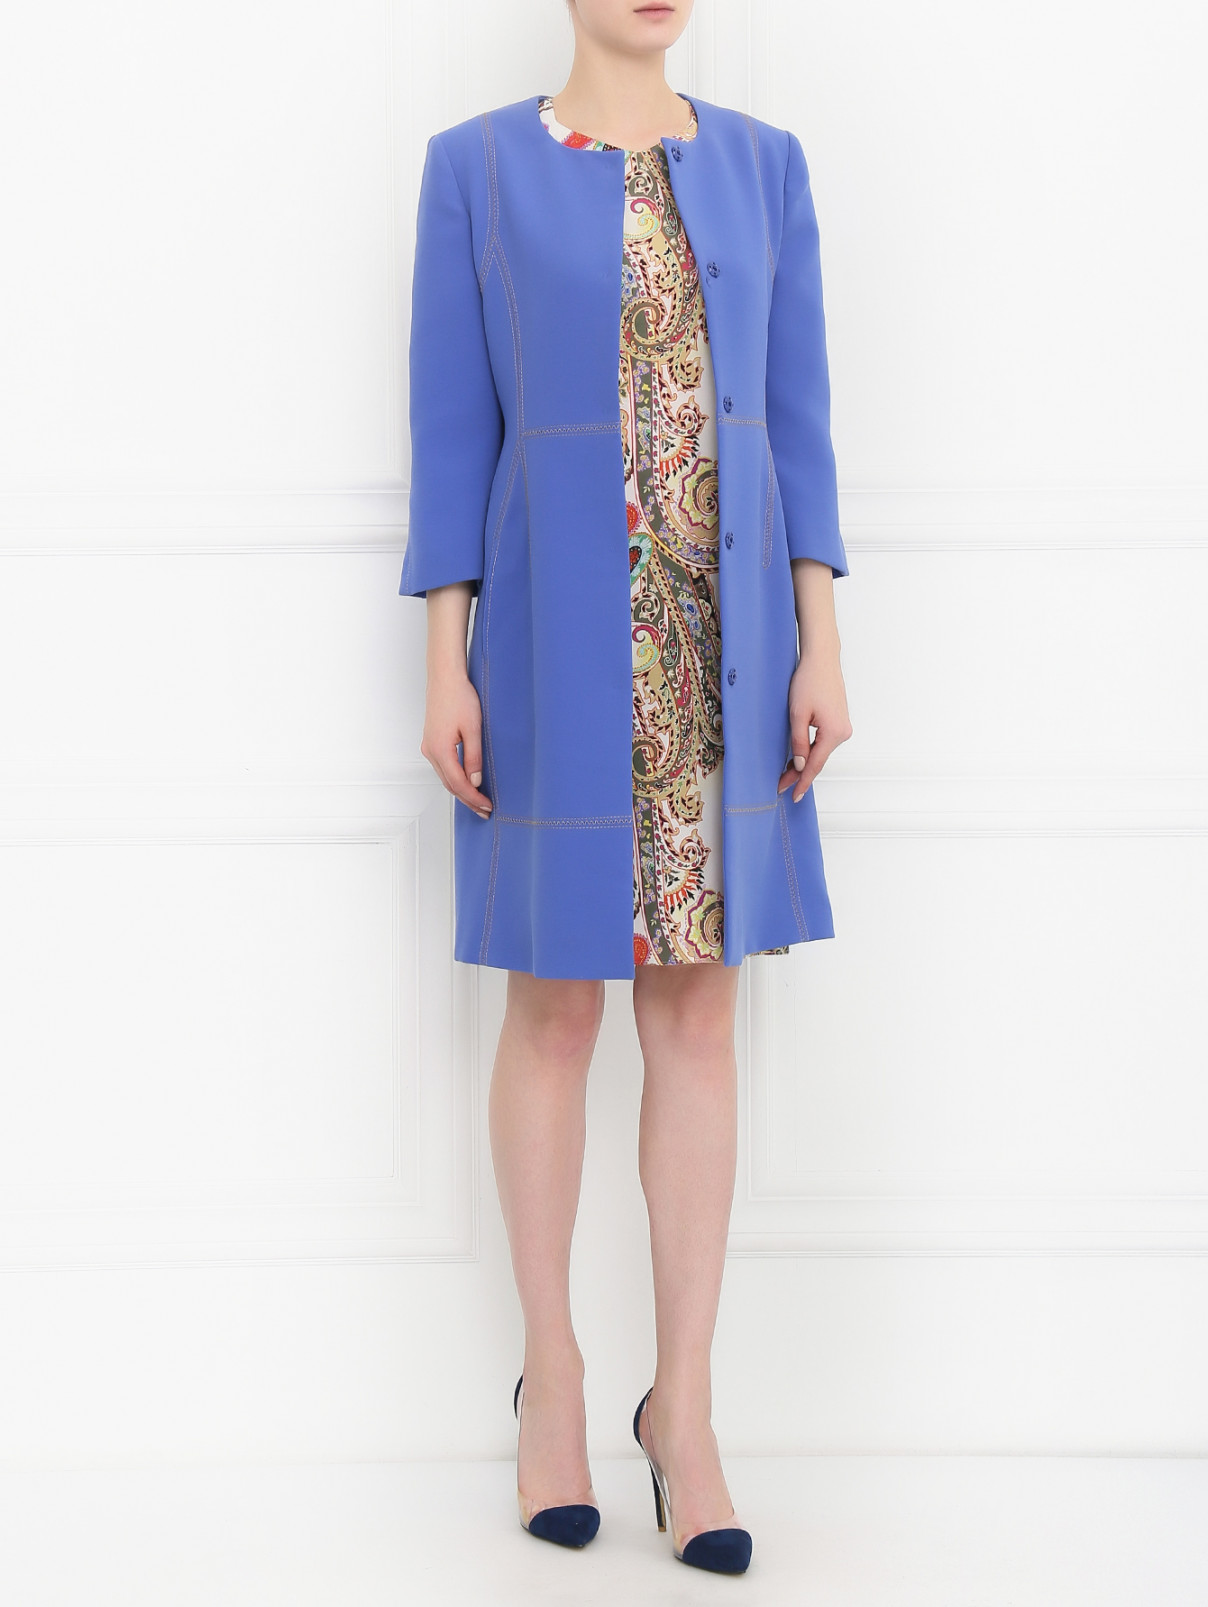 Пальто с рукавами 3/4 Alberta Ferretti  –  Модель Общий вид  – Цвет:  Синий